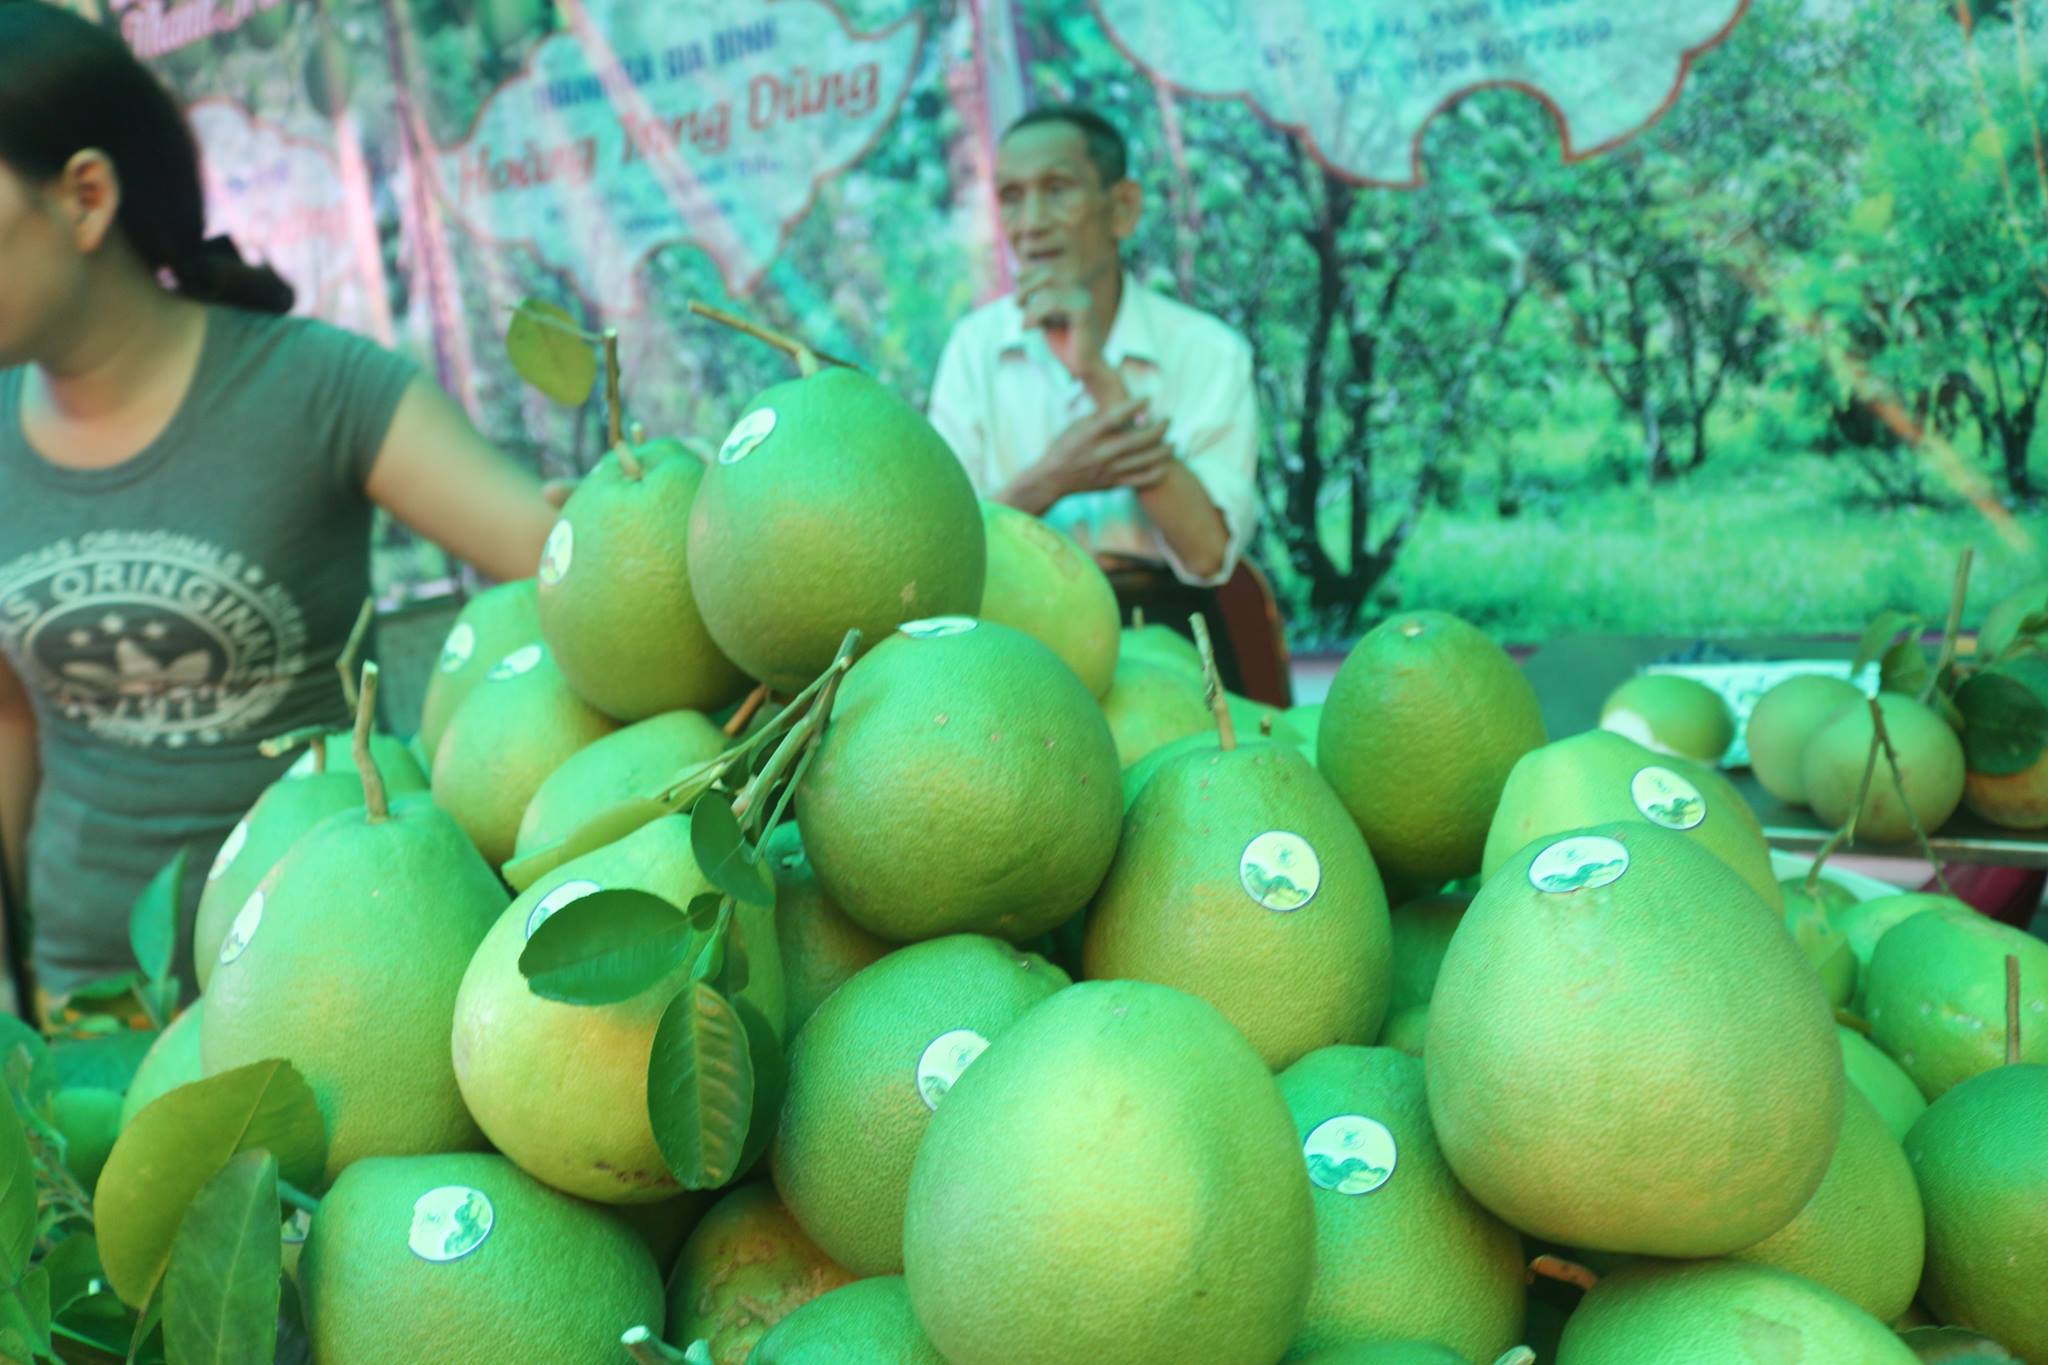 Thanh Trà là một trong những cây ăn quả đặc sản nổi tiếng, được trồng ở một số địa phương trong tỉnh Thừa Thiên - Huế.